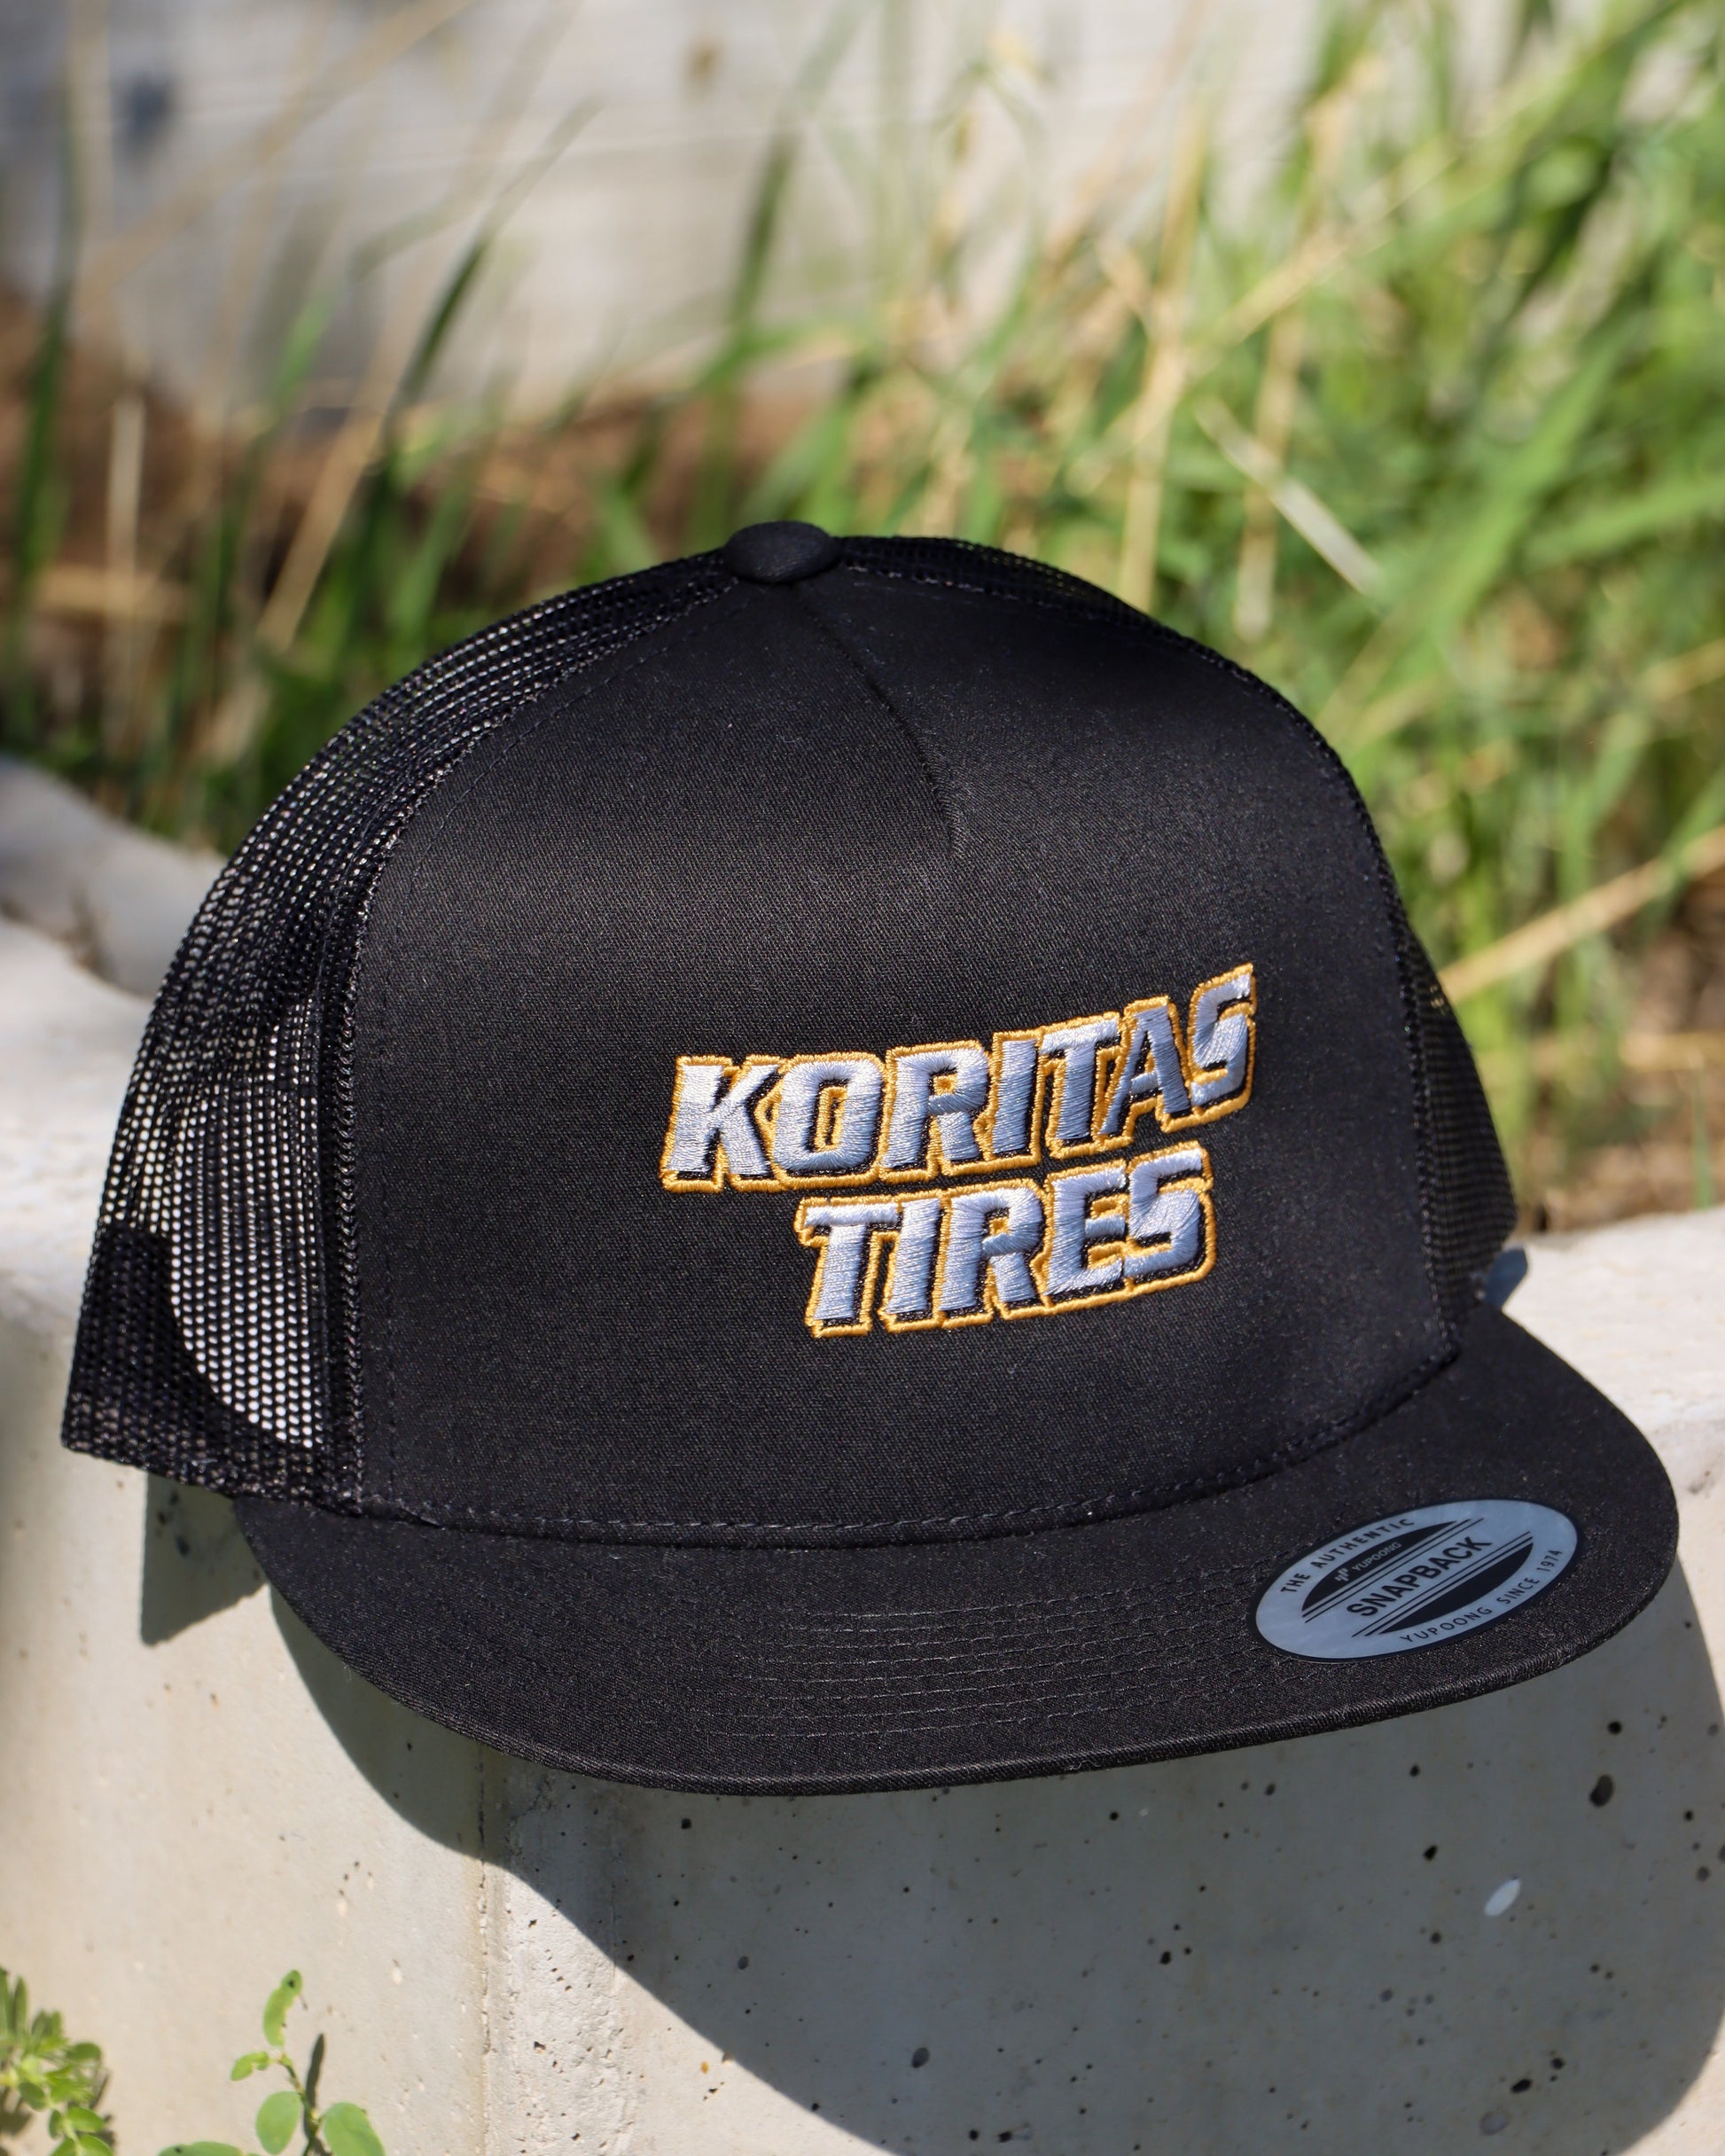 Koritas Tires Trucker hat